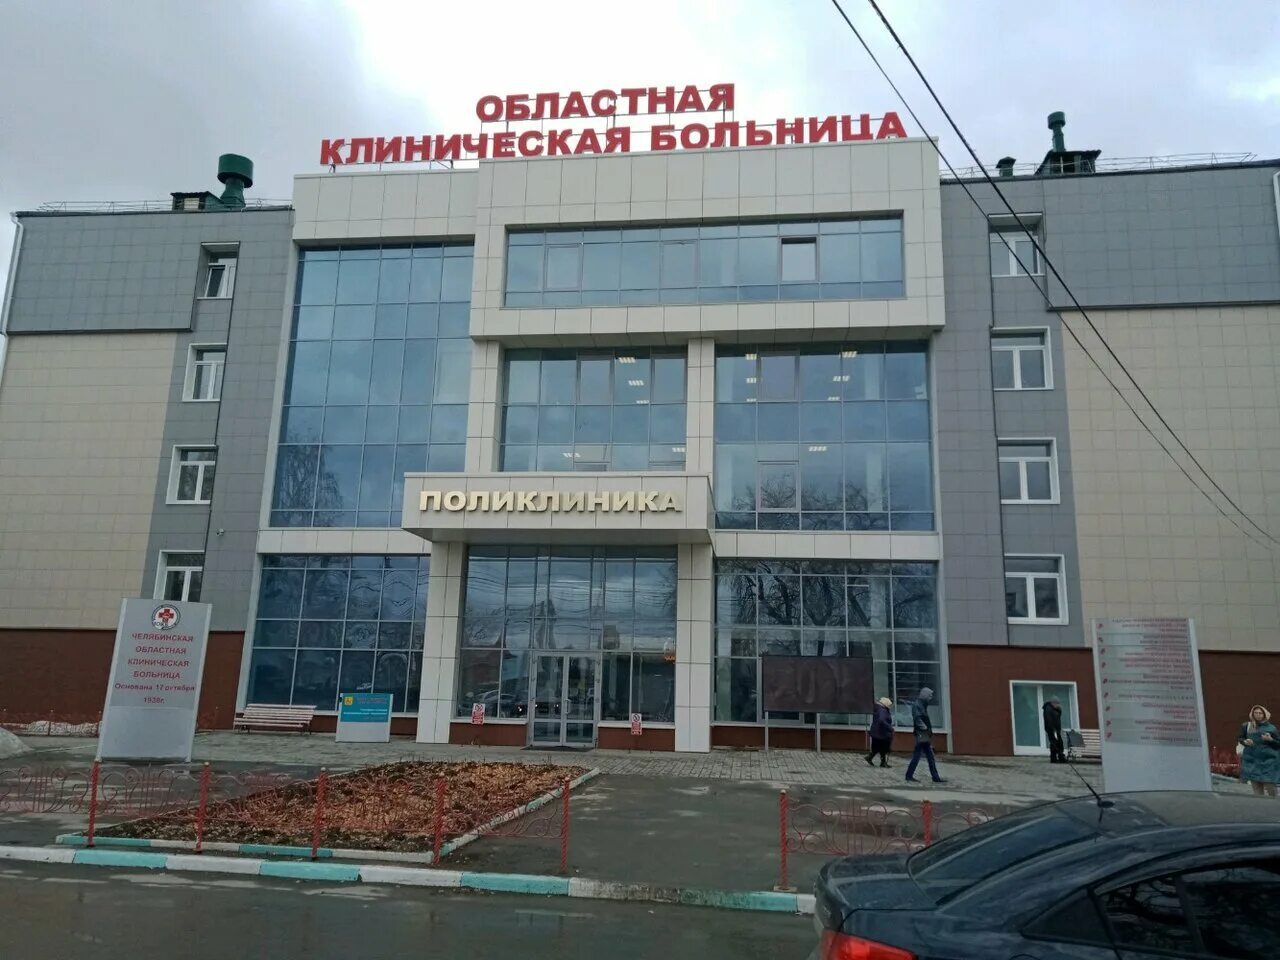 Российская 1 челябинск. Областная клиническая больница 1 Челябинск.